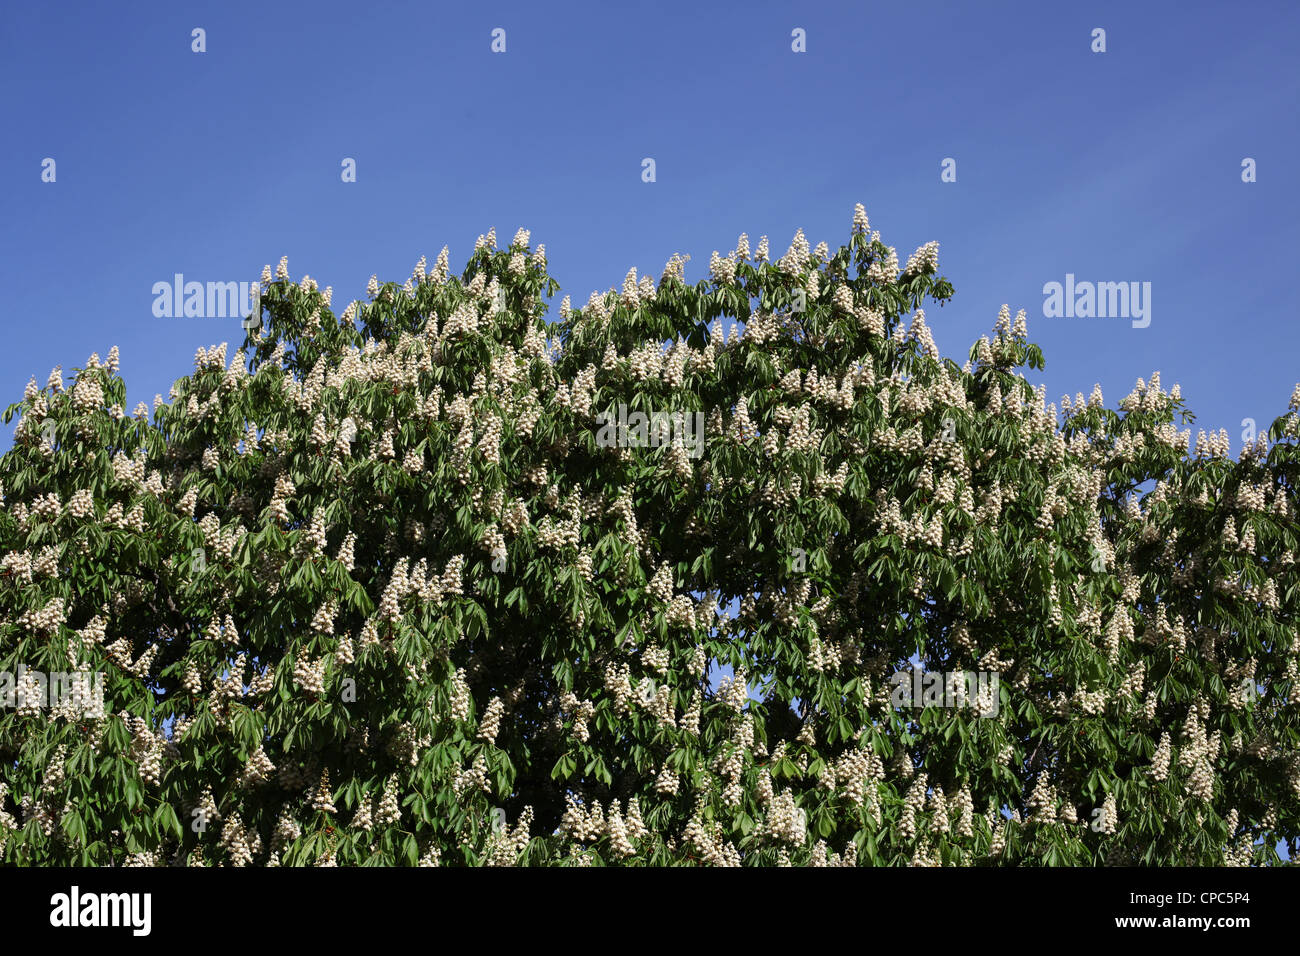 Kastanie Baum in Blüte - Castanea Sativa - Saint-Maurice d'Ardeche - Ardèche - Frankreich Stockfoto